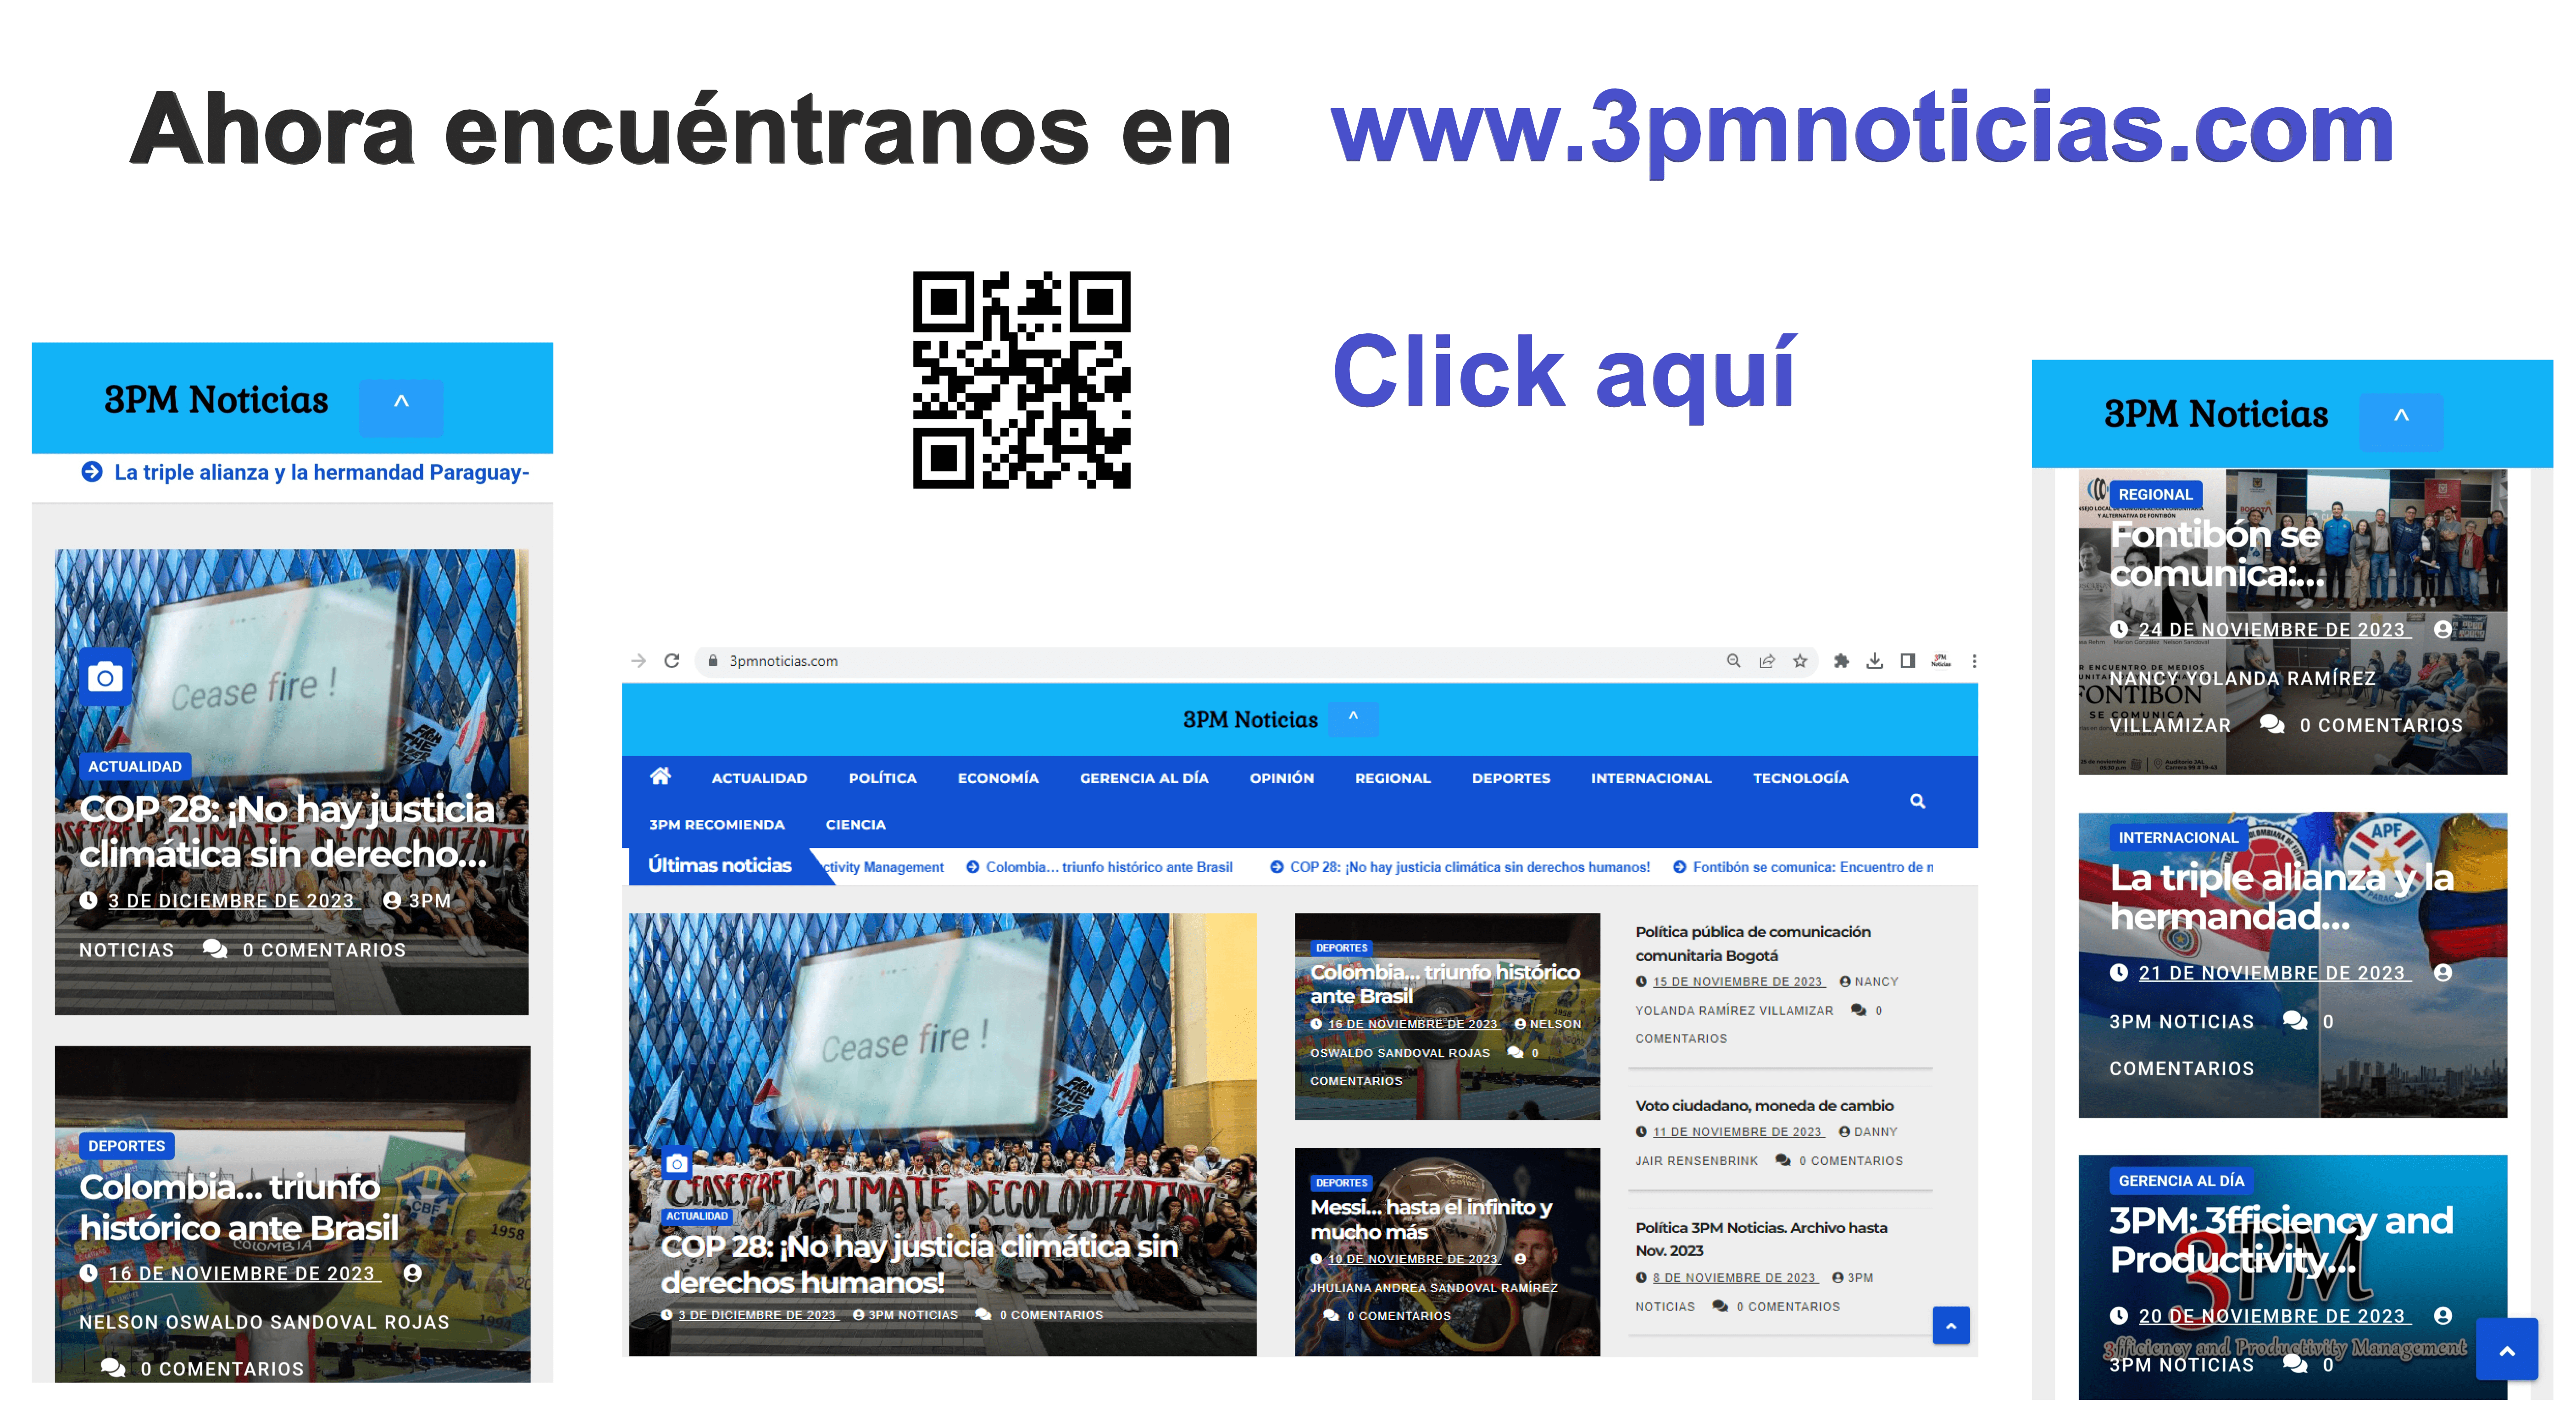 www.3pmnoticias.com